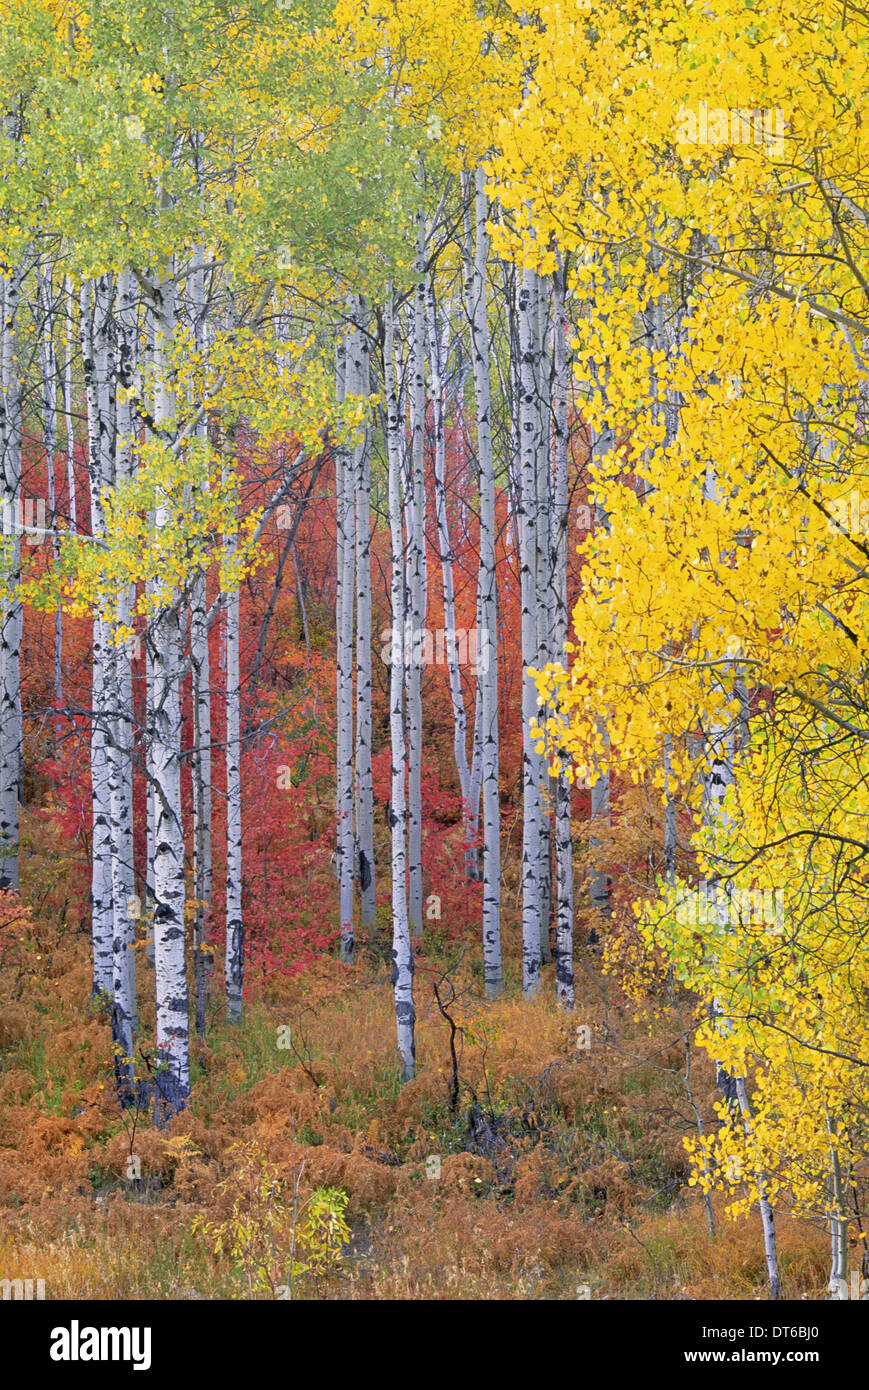 Una foresta di alberi di Aspen in Wasatch Mountains, con impressionante del giallo e del rosso di fogliame di autunno. Foto Stock